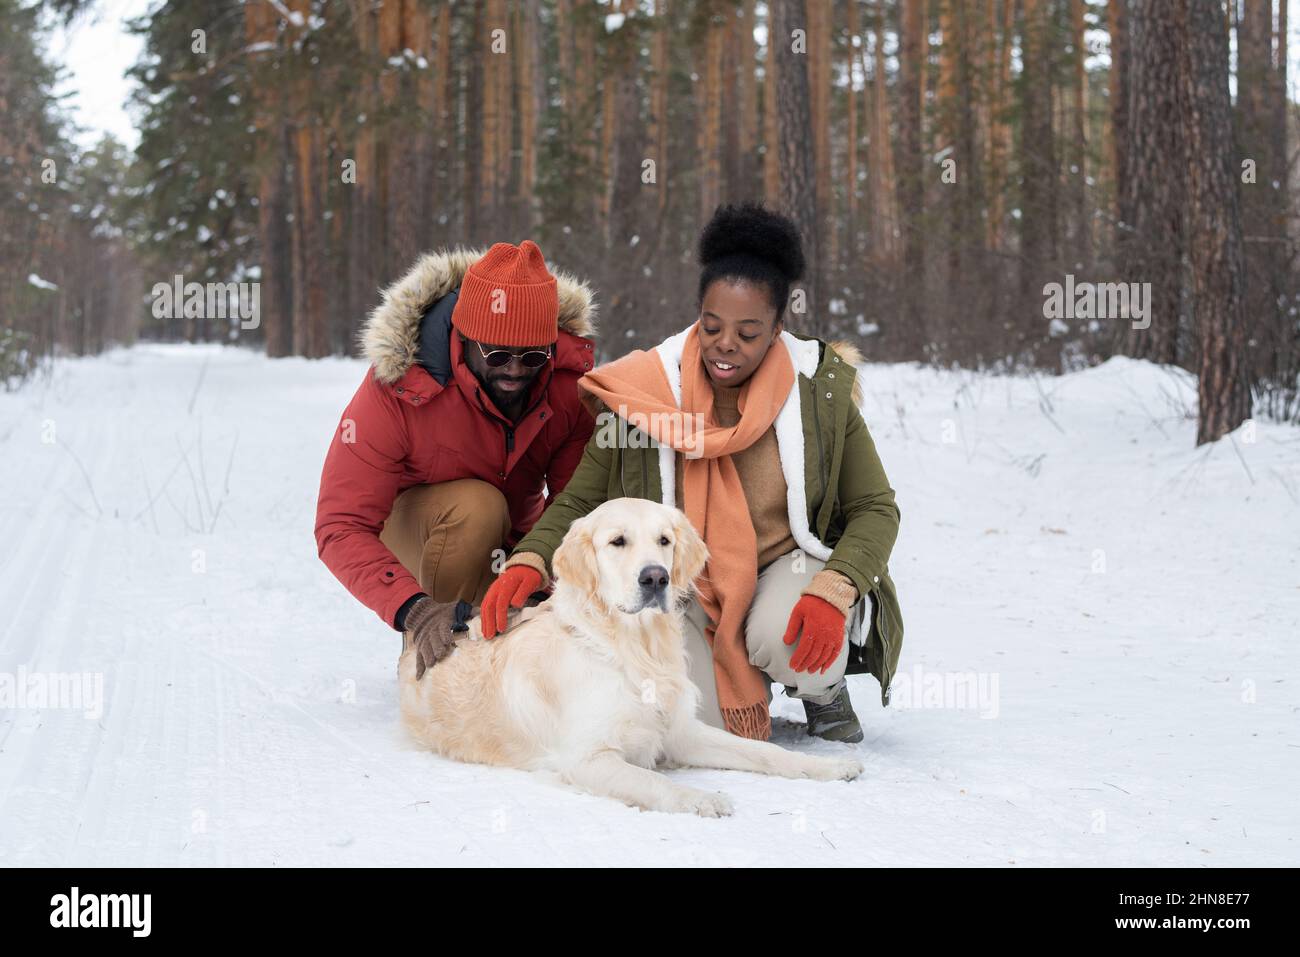 Afrikanisches junges Paar in warmer Kleidung, das den Hund berührt, der am Wintertag auf dem Schnee liegt, während ihres Spaziergangs im Wald Stockfoto